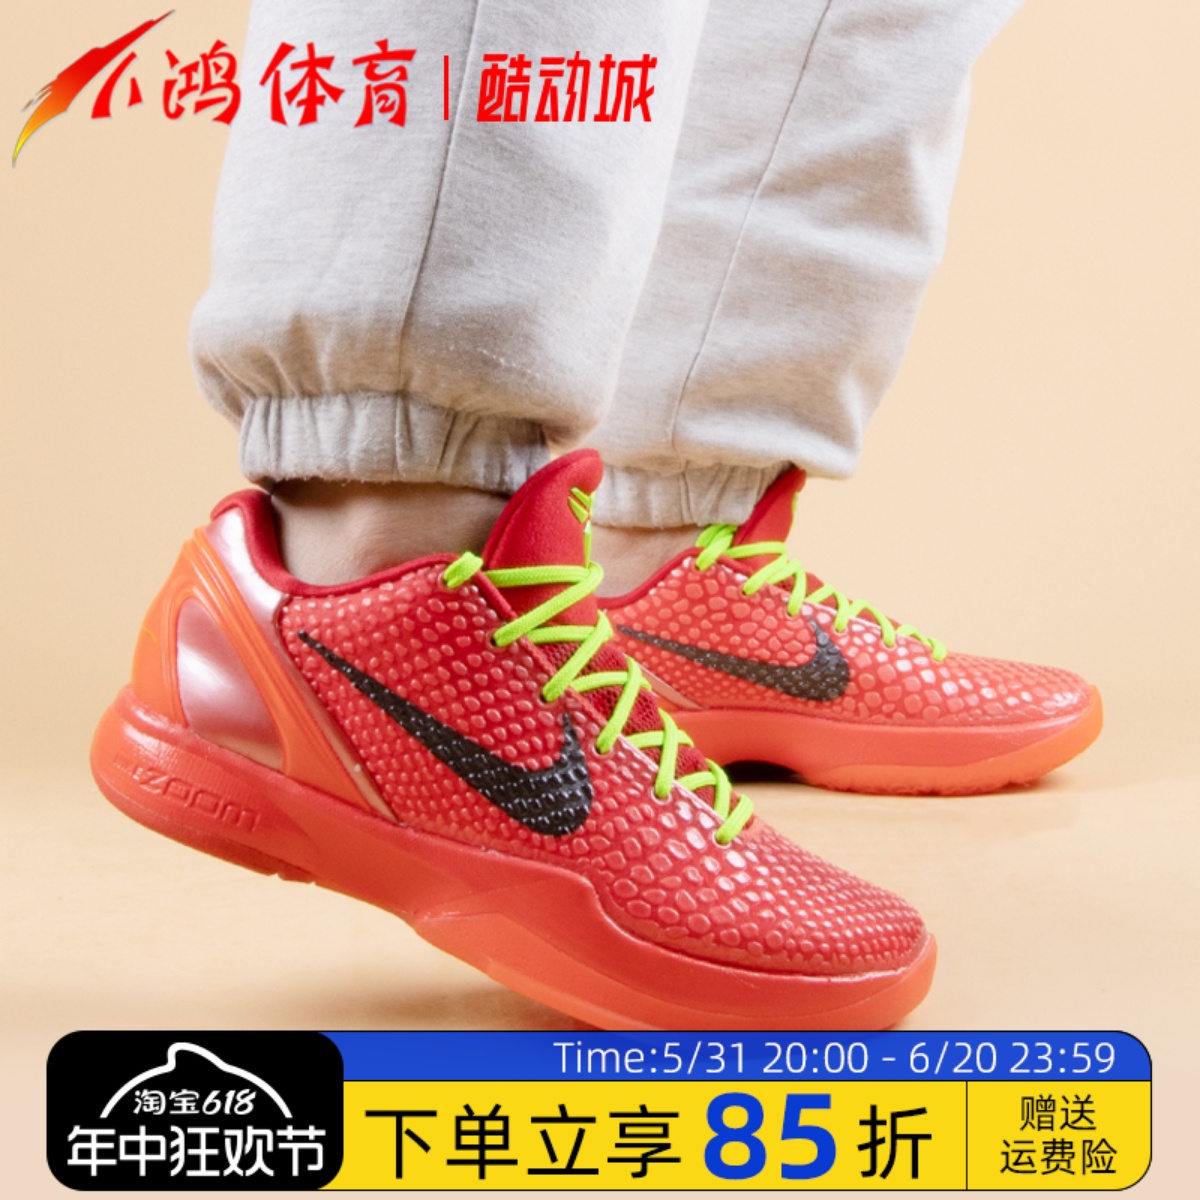 小鸿体育Nike Kobe 6 ZK6科比6 反转青蜂侠 红色篮球鞋FV4921-600